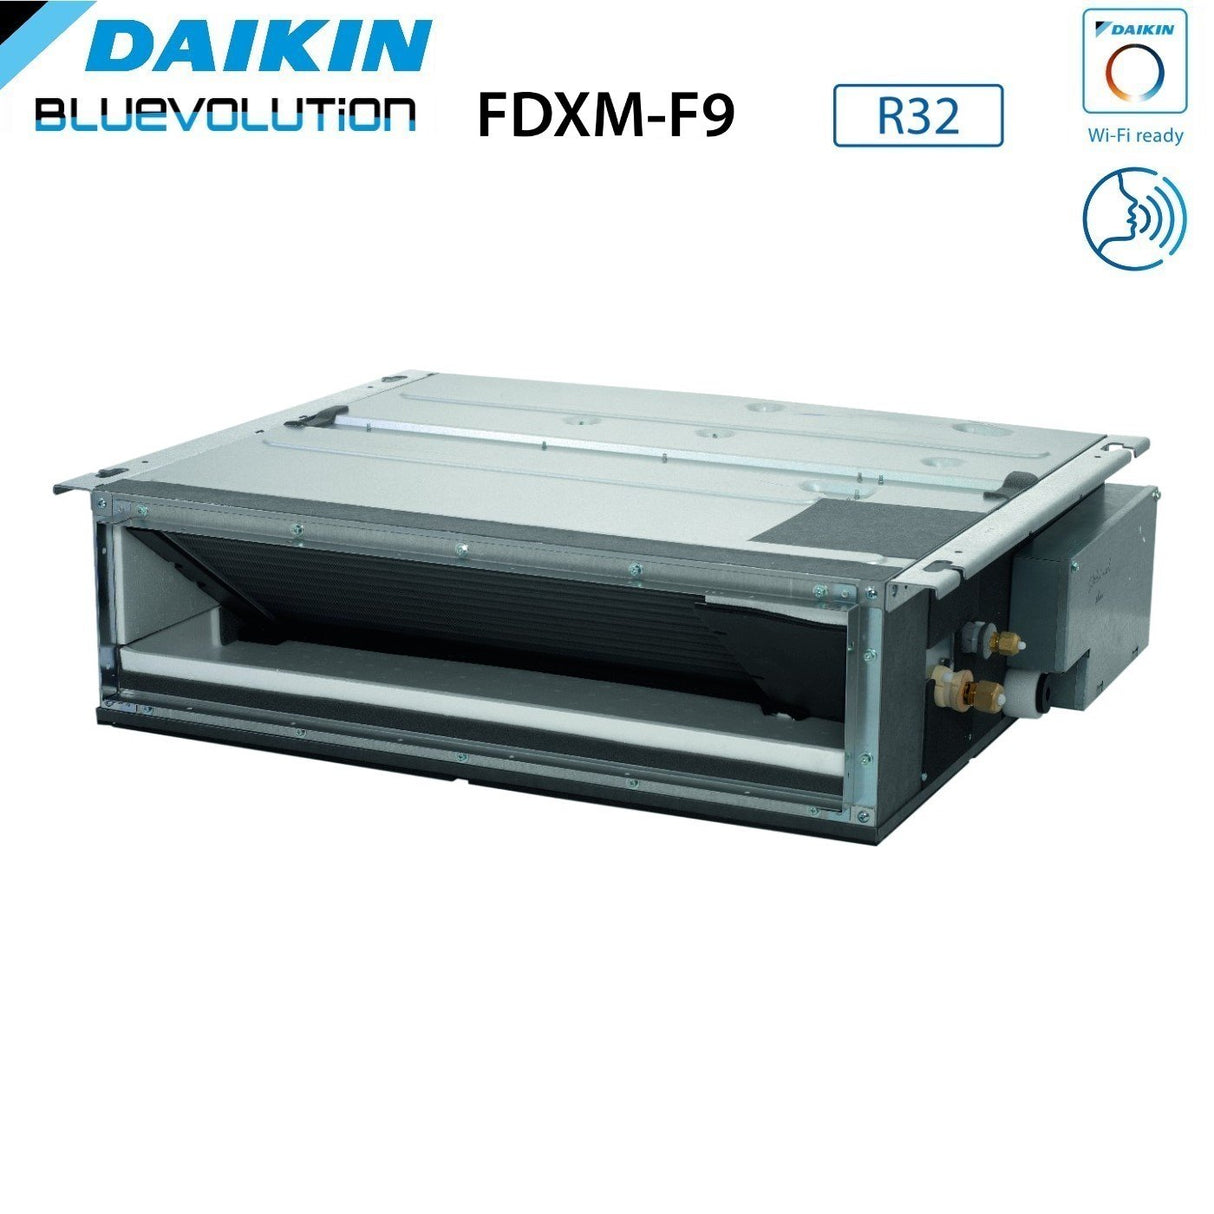 immagine-3-daikin-climatizzatore-condizionatore-daikin-bluevolution-dual-split-canalizzato-canalizzabile-inverter-serie-fdxm-f9-912-con-2mxm50a-r-32-wi-fi-optional-900012000-garanzia-italiana